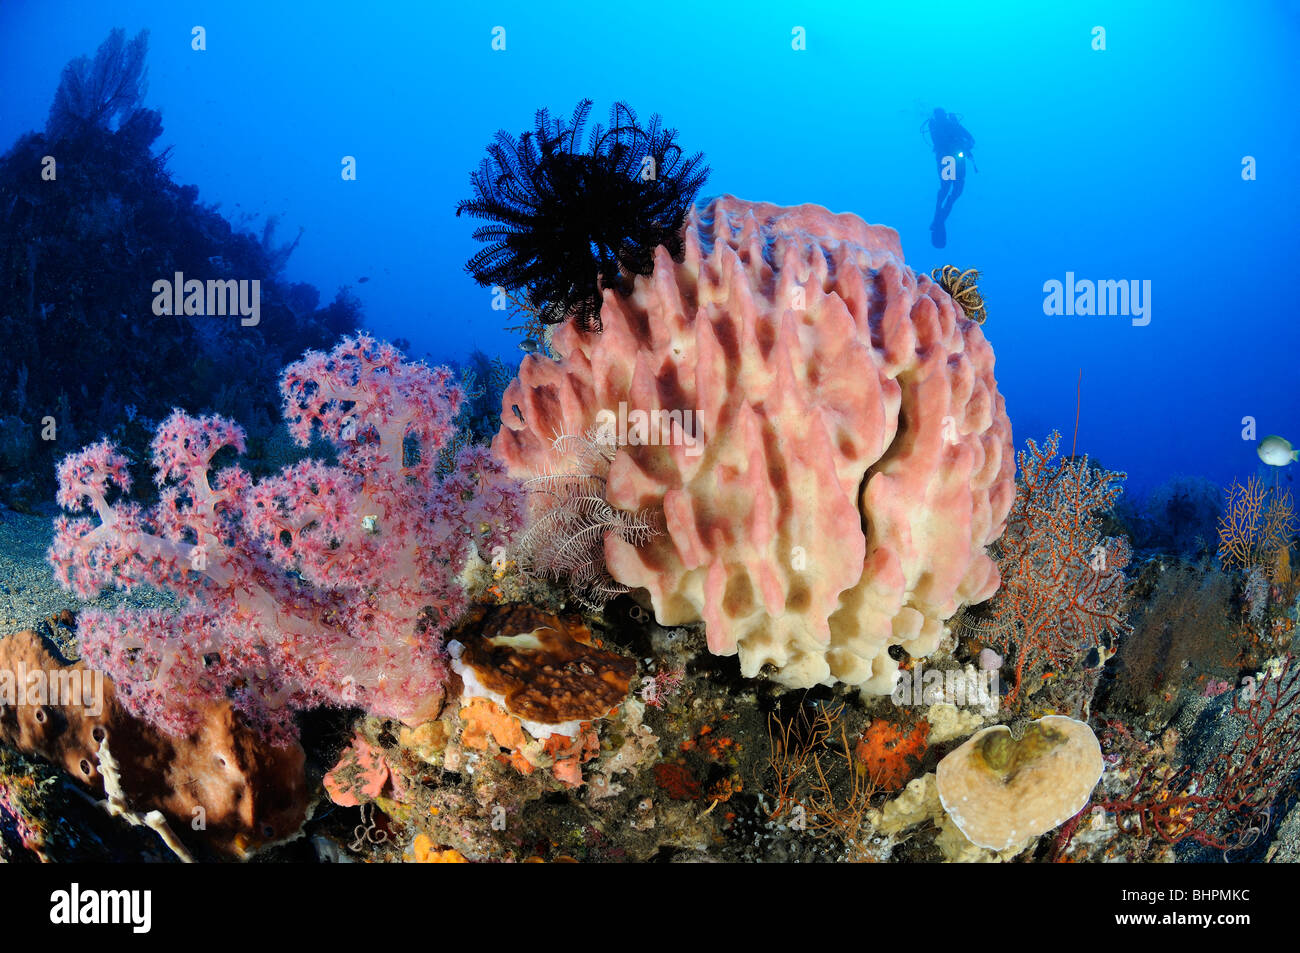 "Testudinaria Xestospongia, Dendronephthya sp., scuba diver al colorata barriera corallina con canna in spugna e di coralli molli, Bali Foto Stock